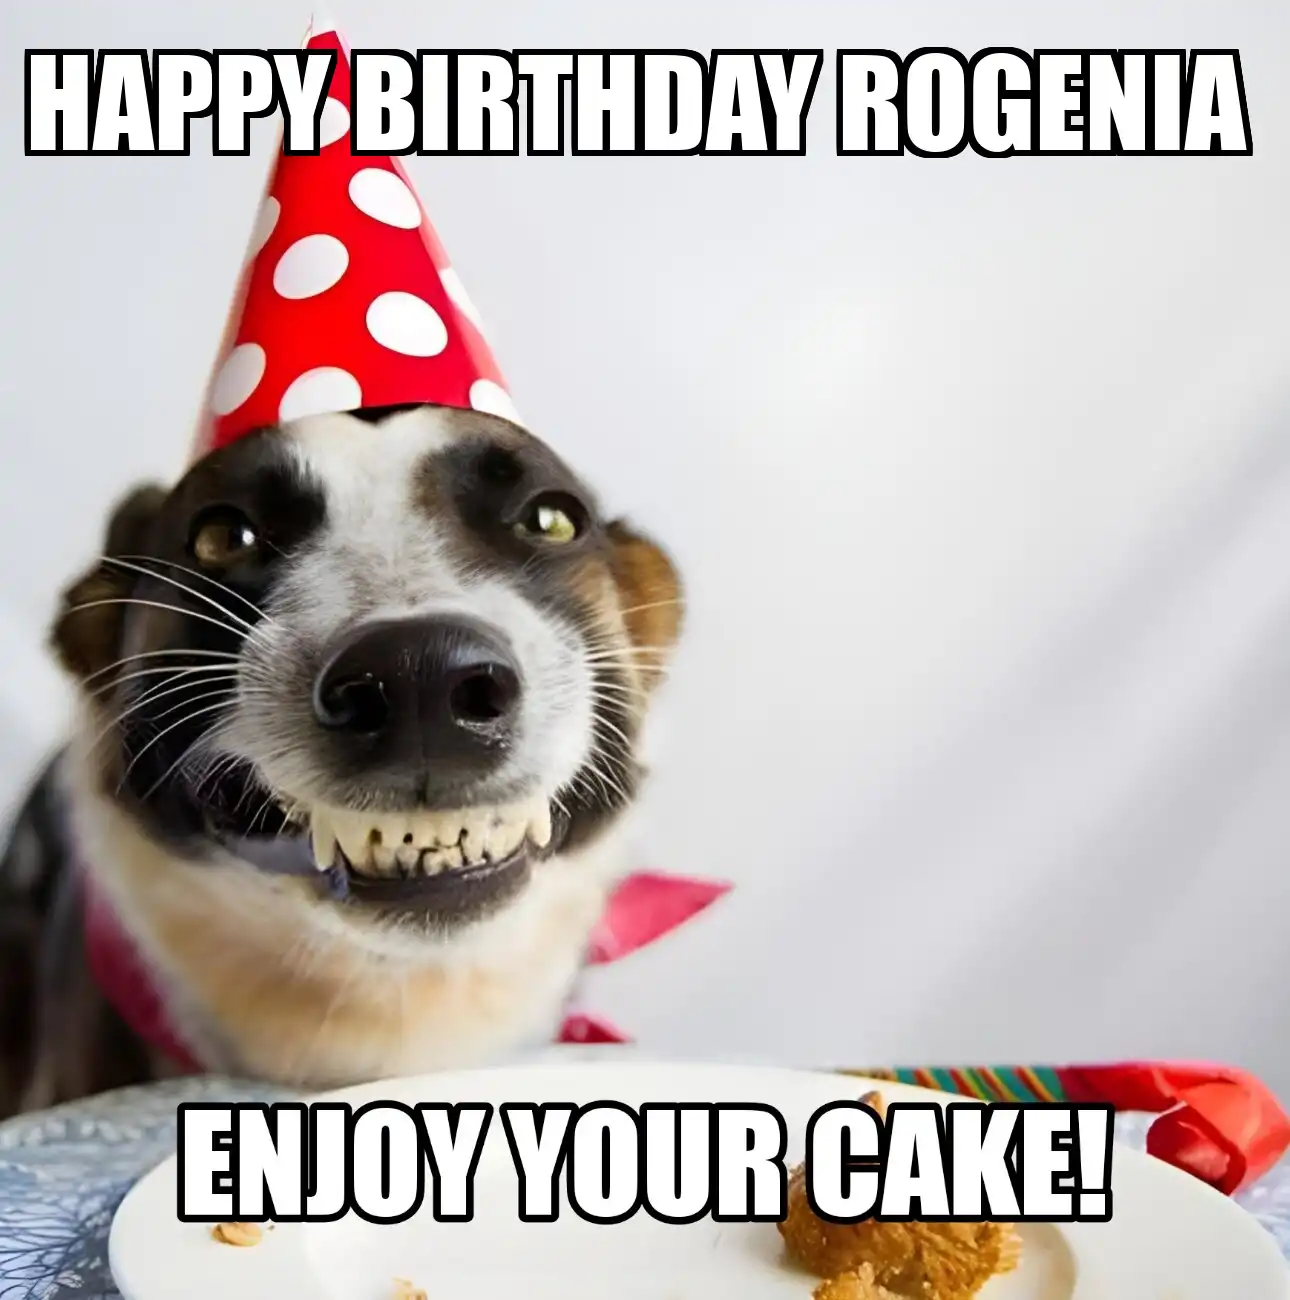 Happy Birthday Rogenia Enjoy Your Cake Dog Meme